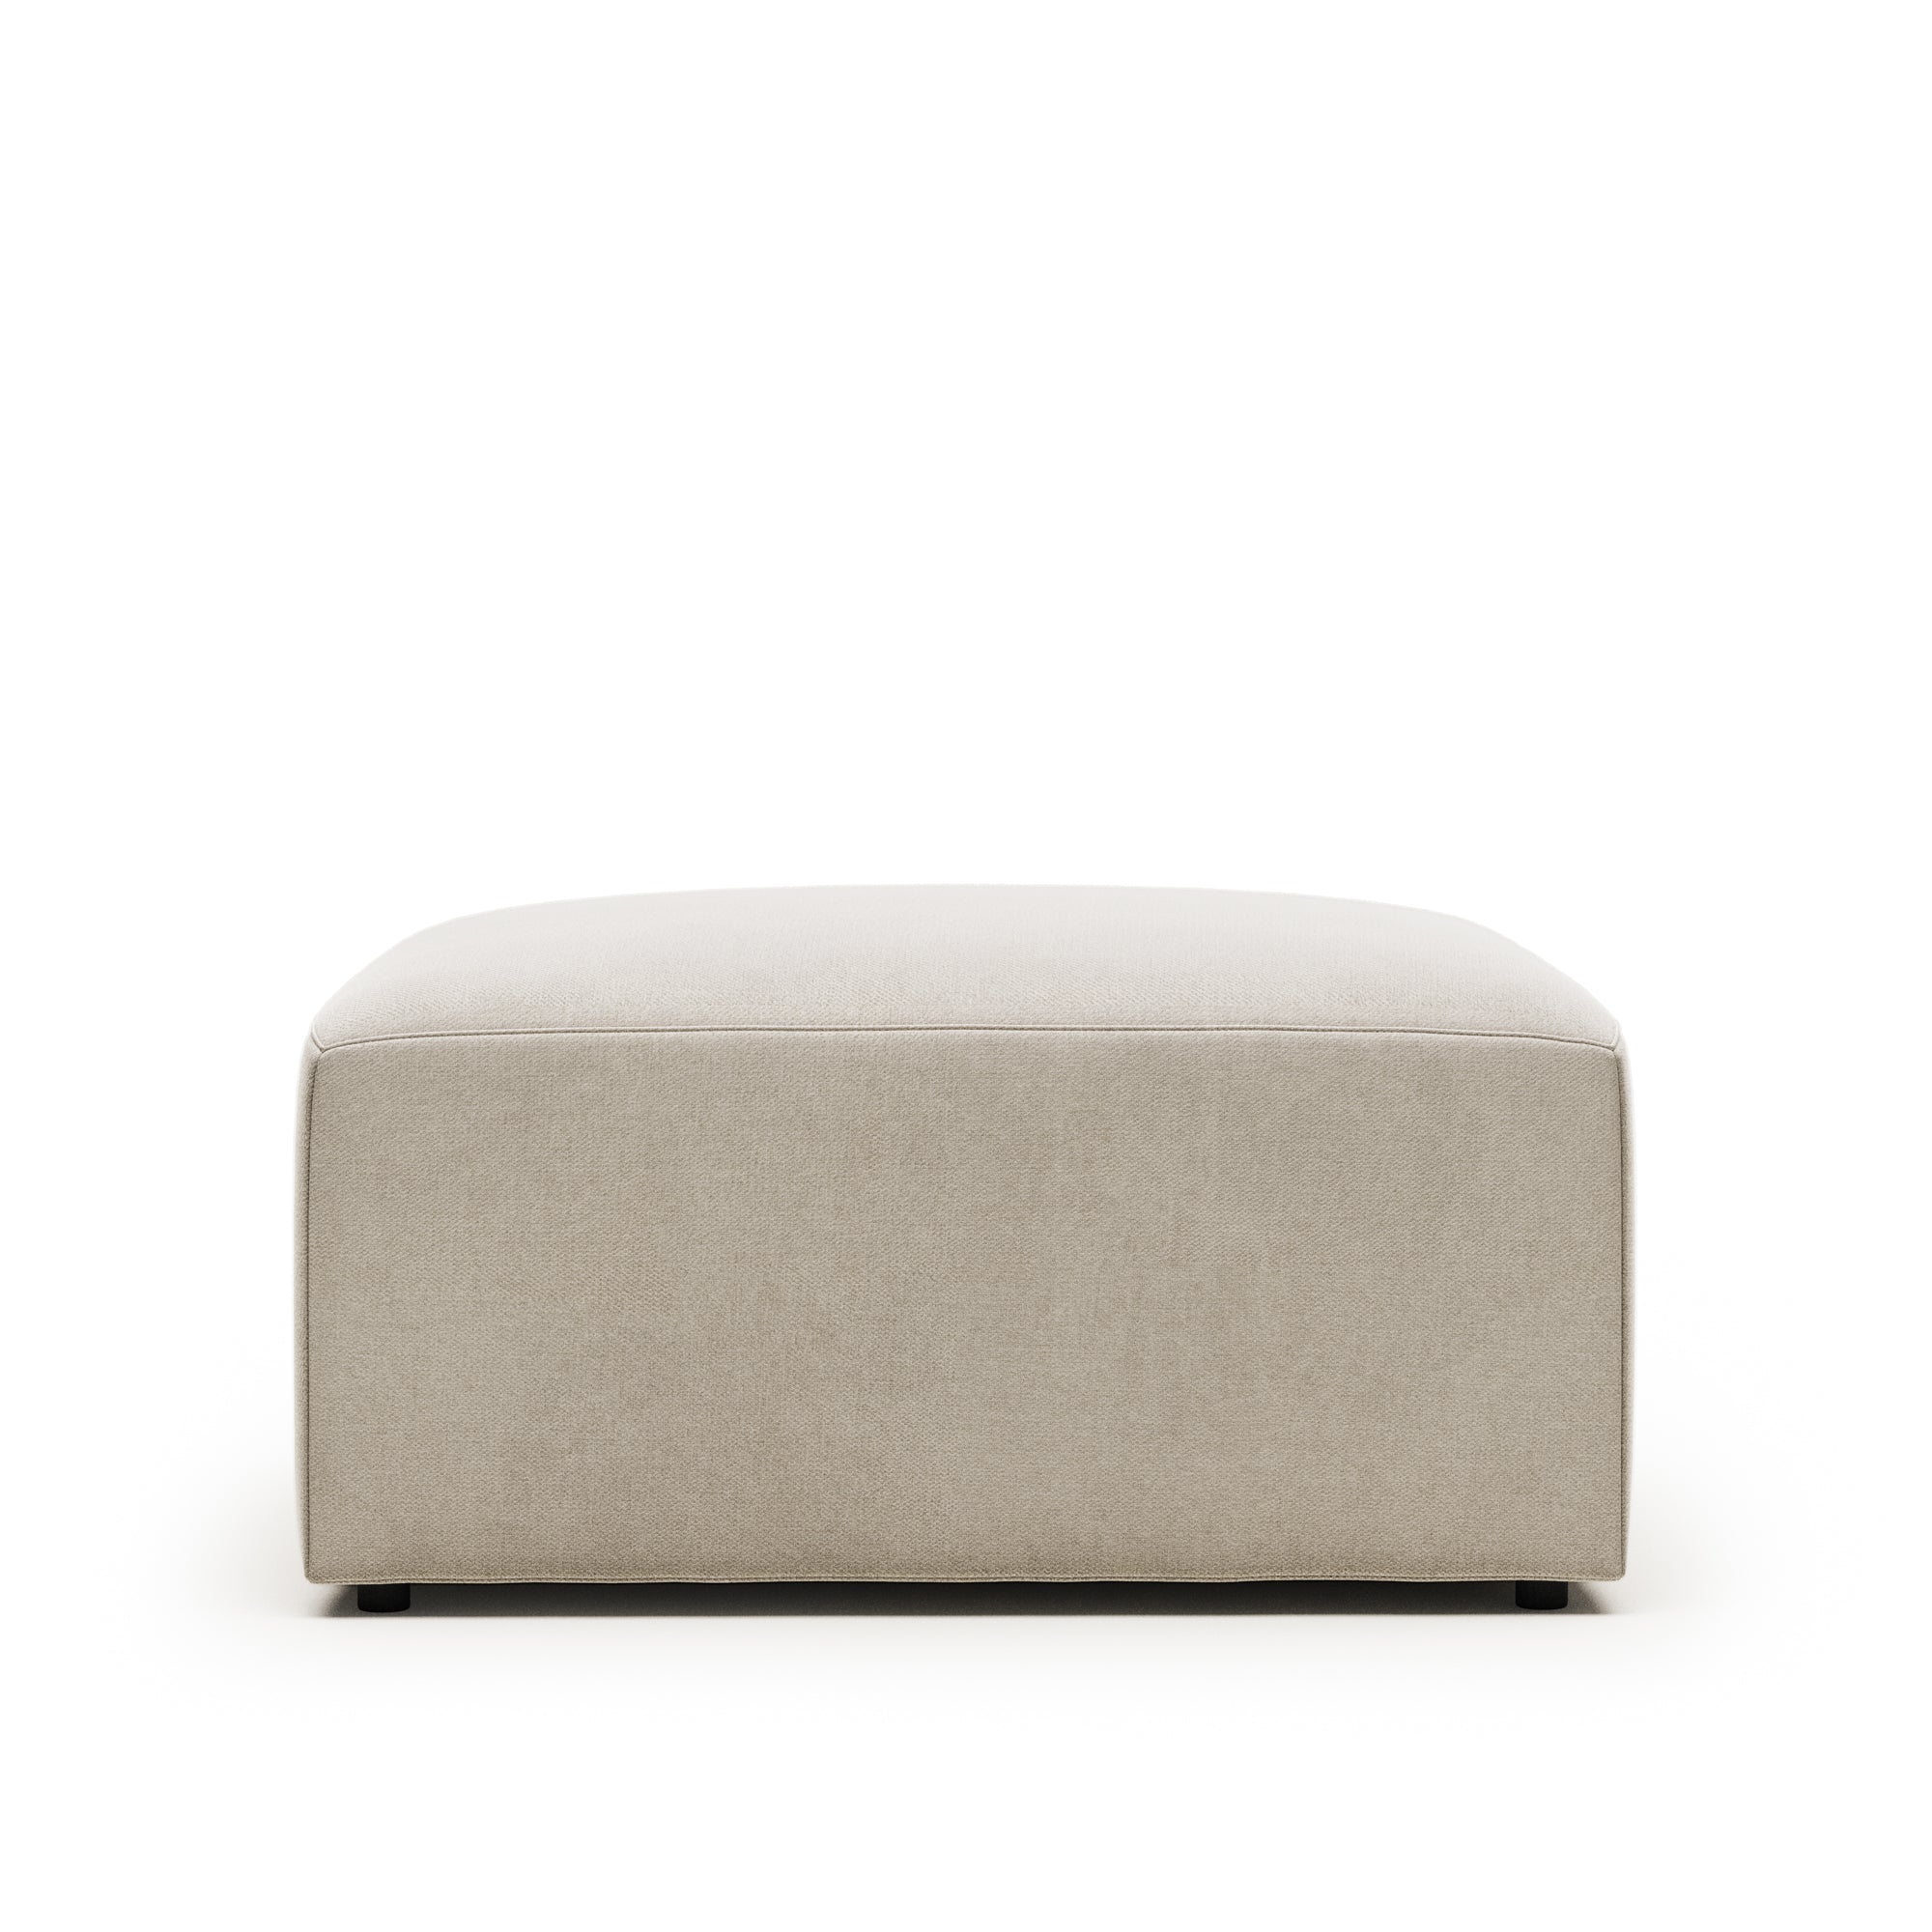 Blok footstool in beige, 90 x 70 cm